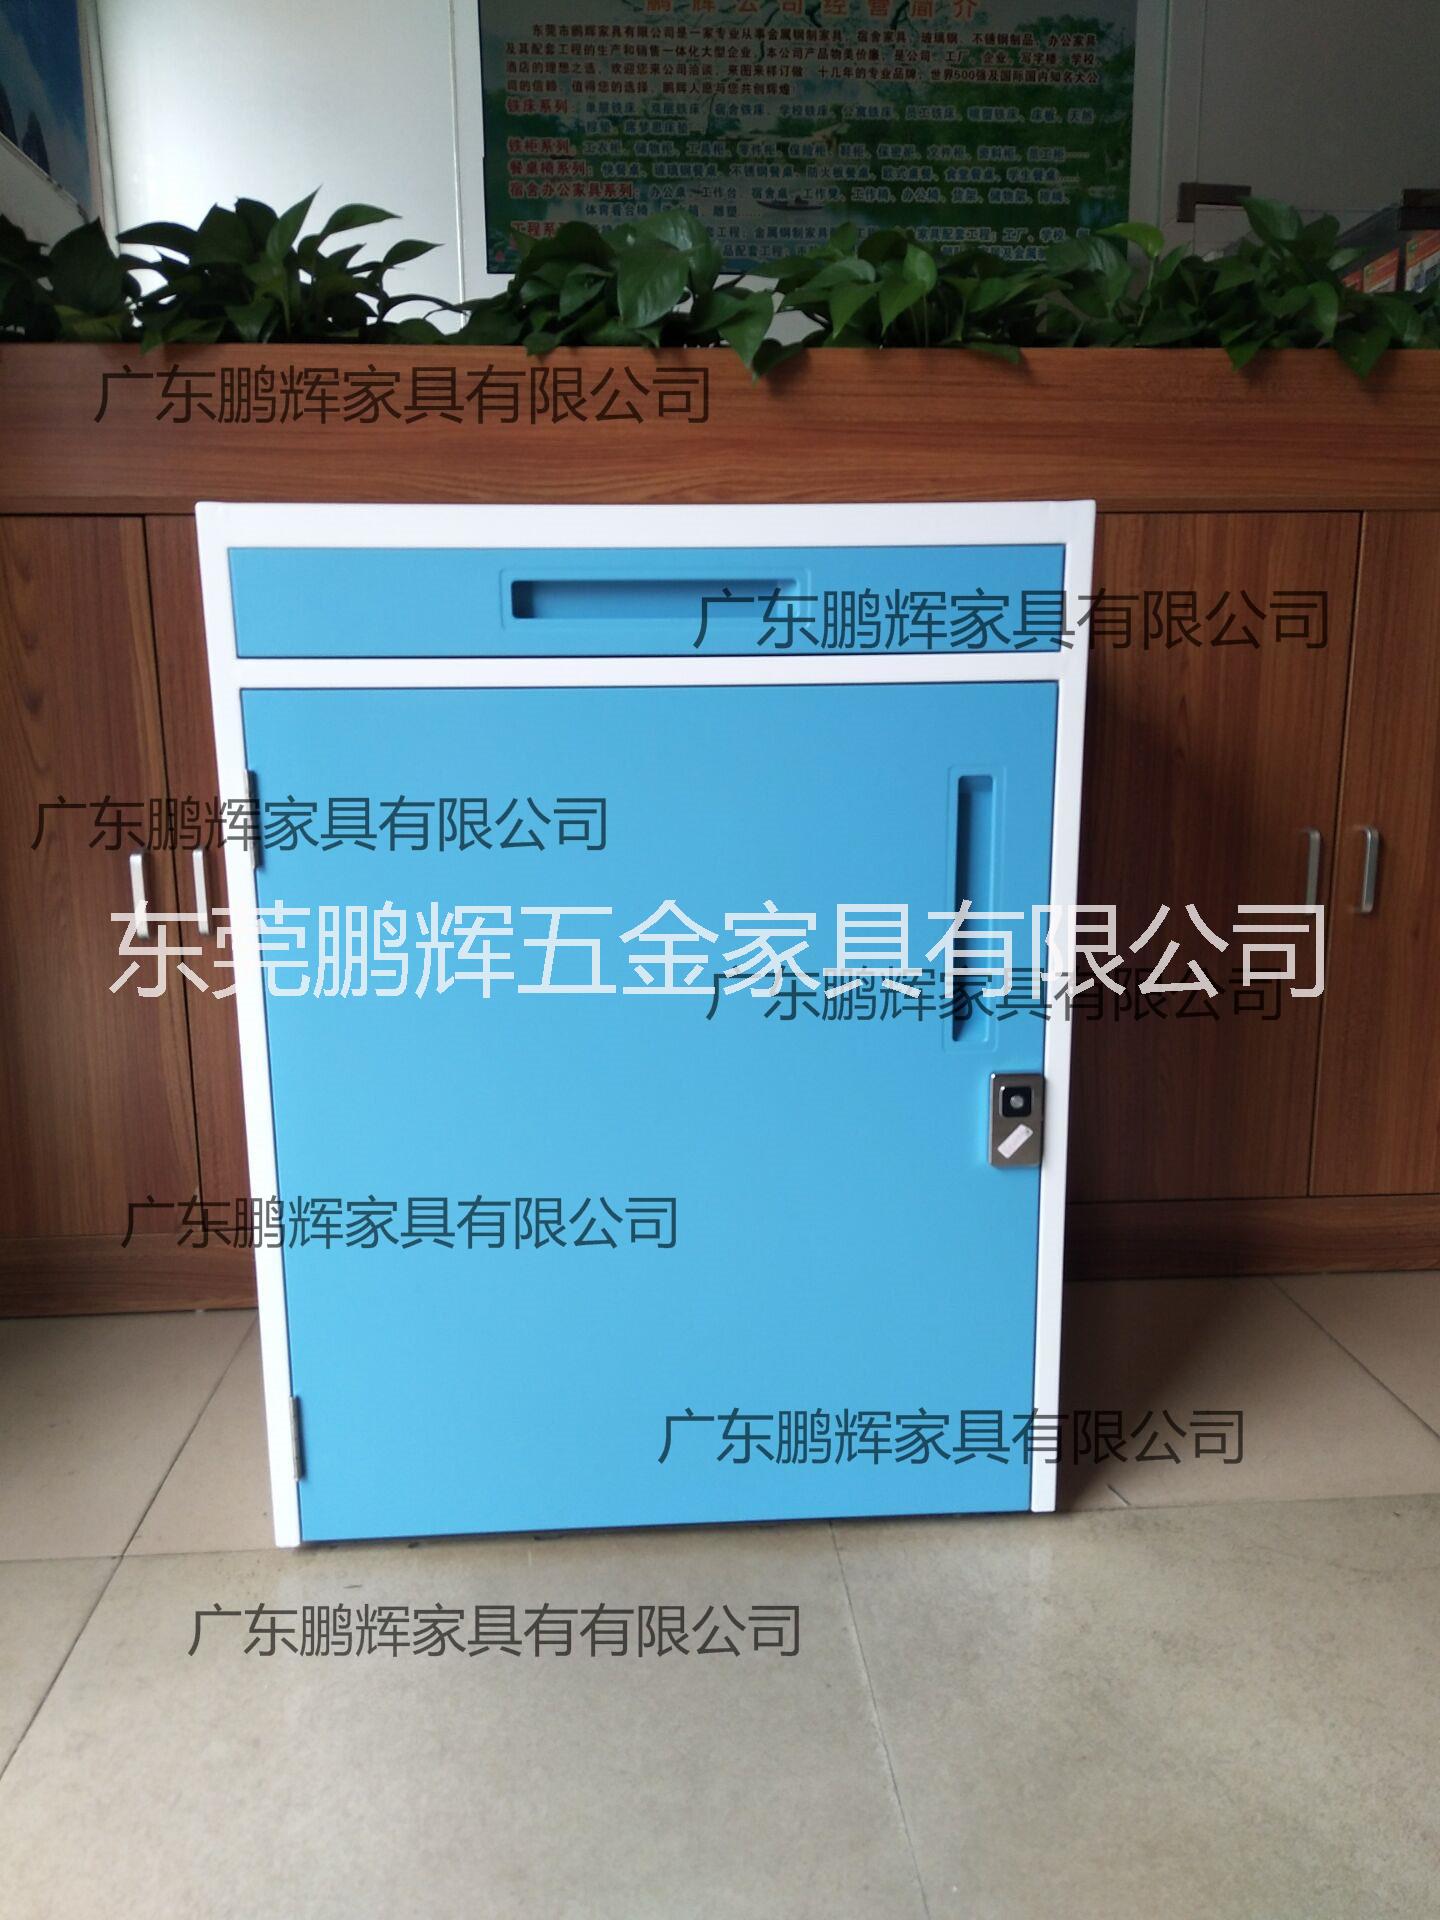 广东鹏辉家具专业生产共享陪护床柜、折叠陪护床、陪护床